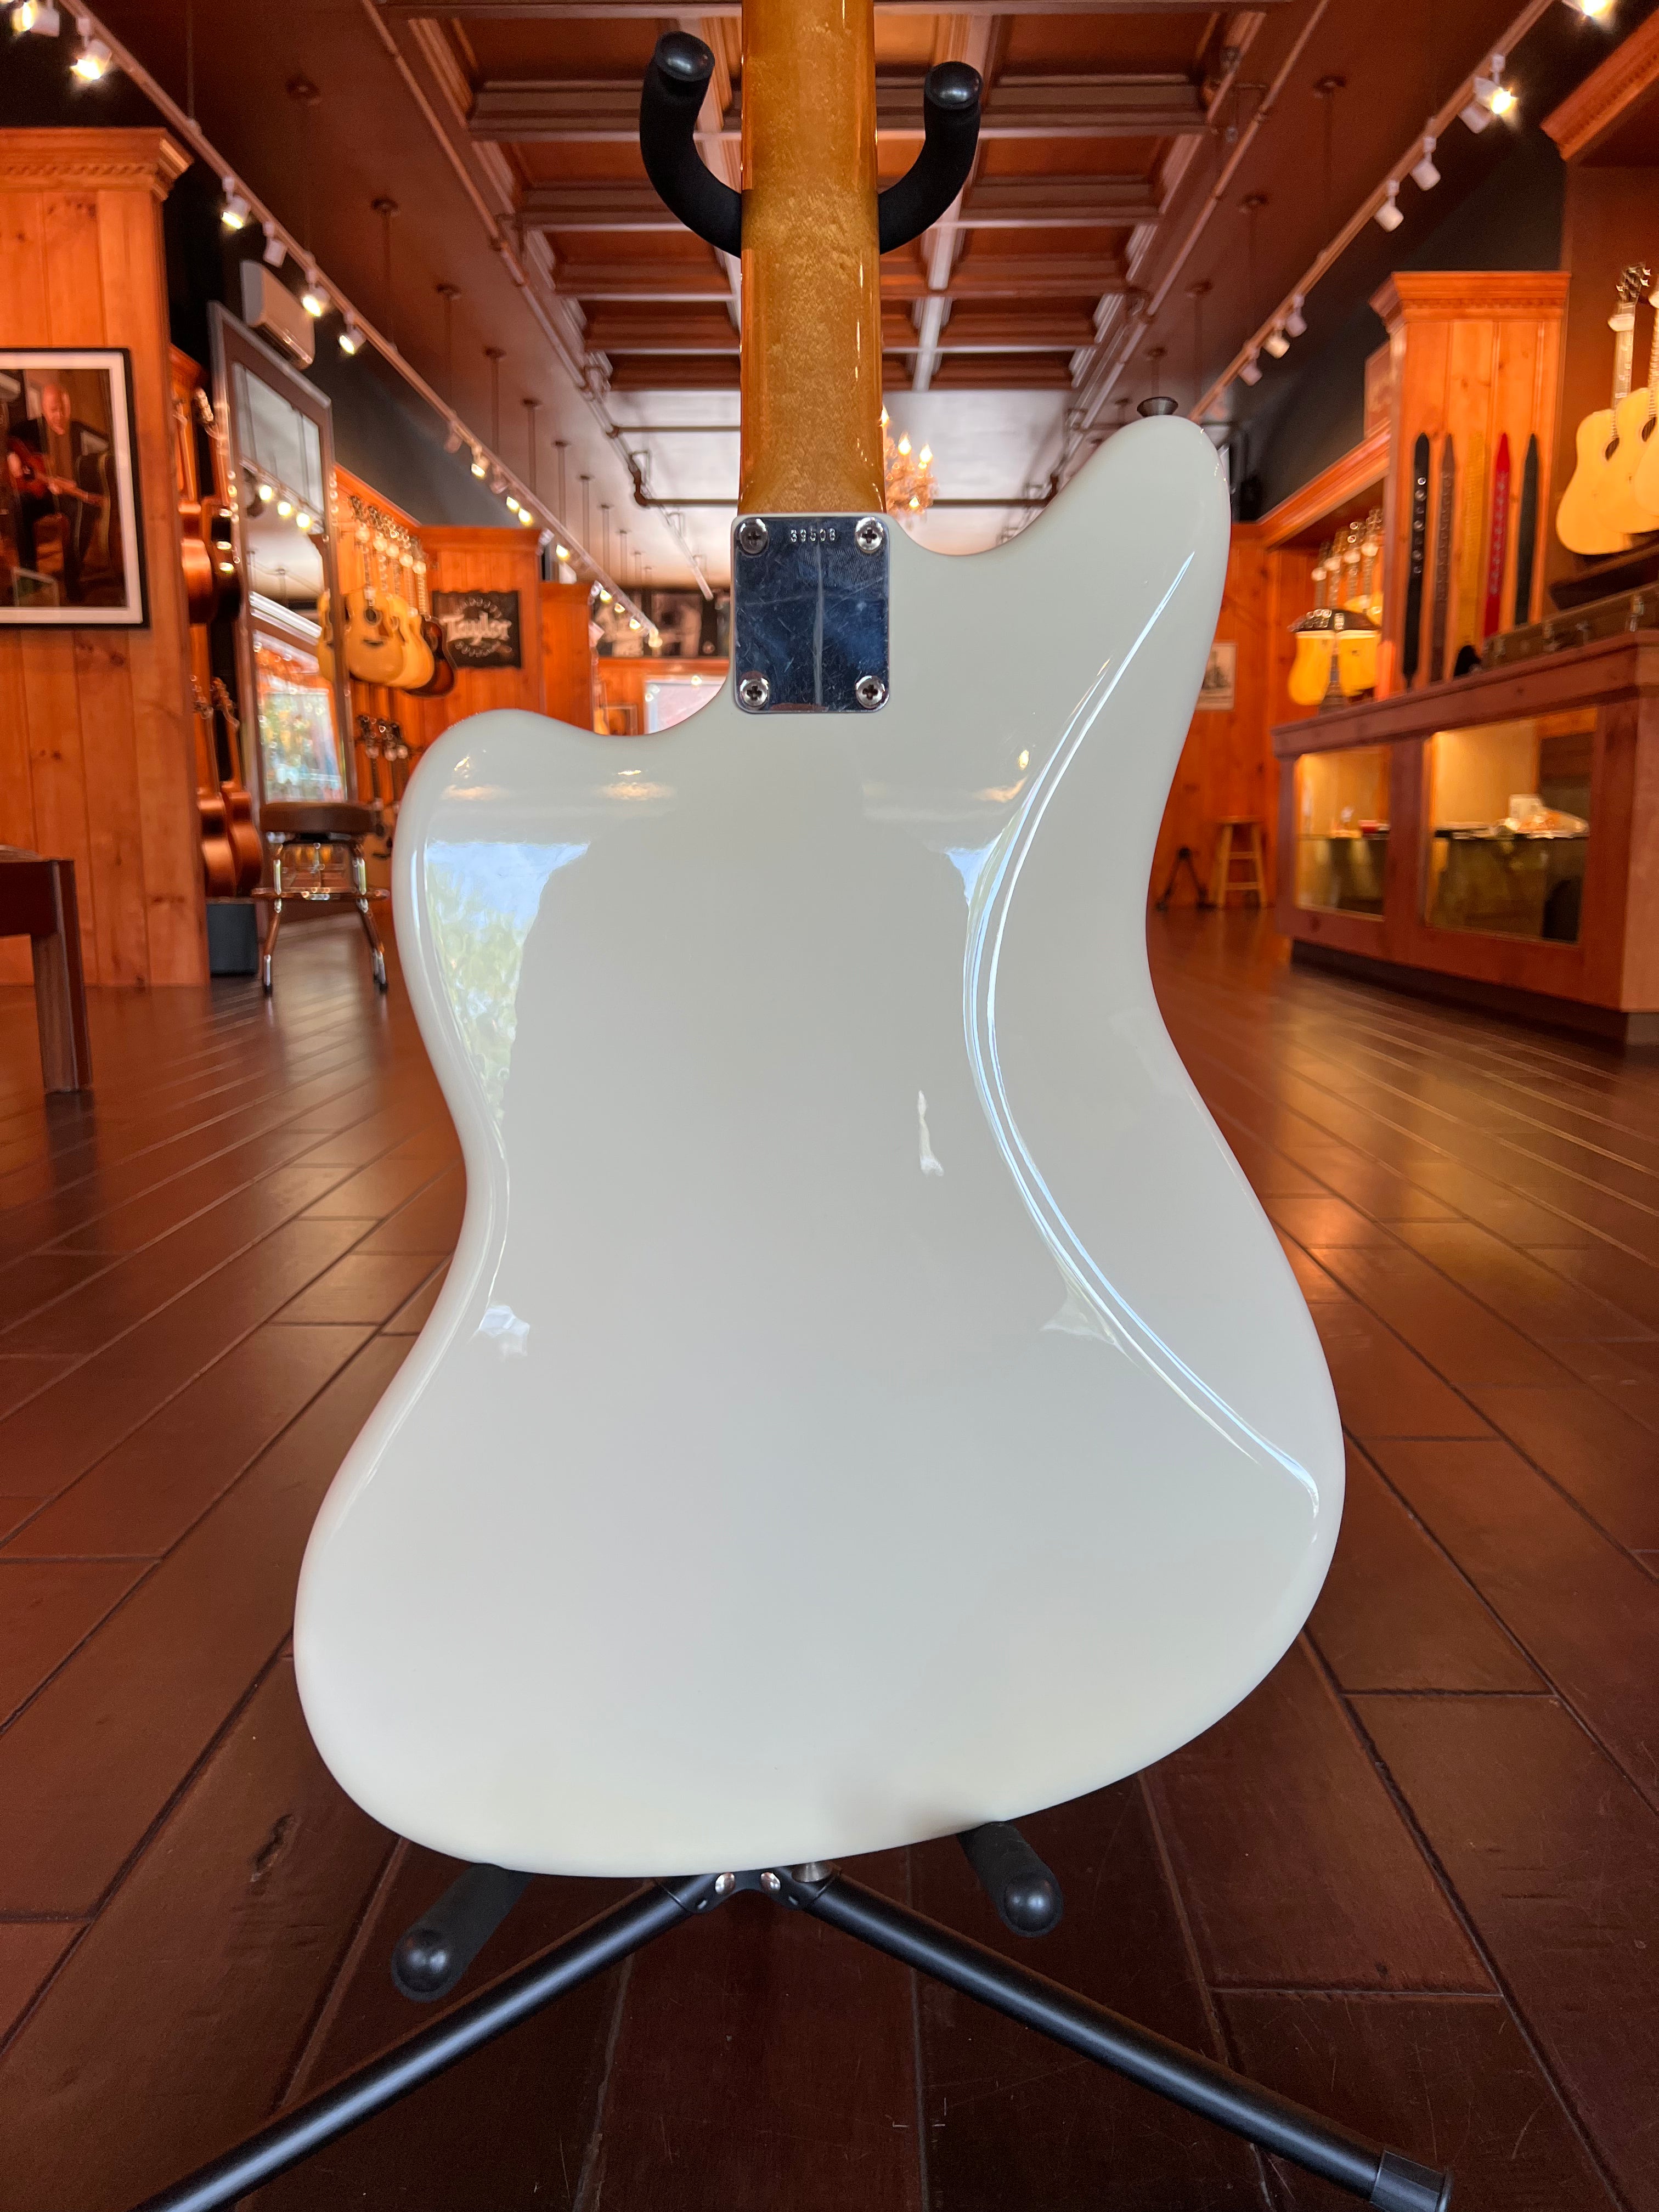 Fender 1959 Jazzmaster Olympic White (Refinished)